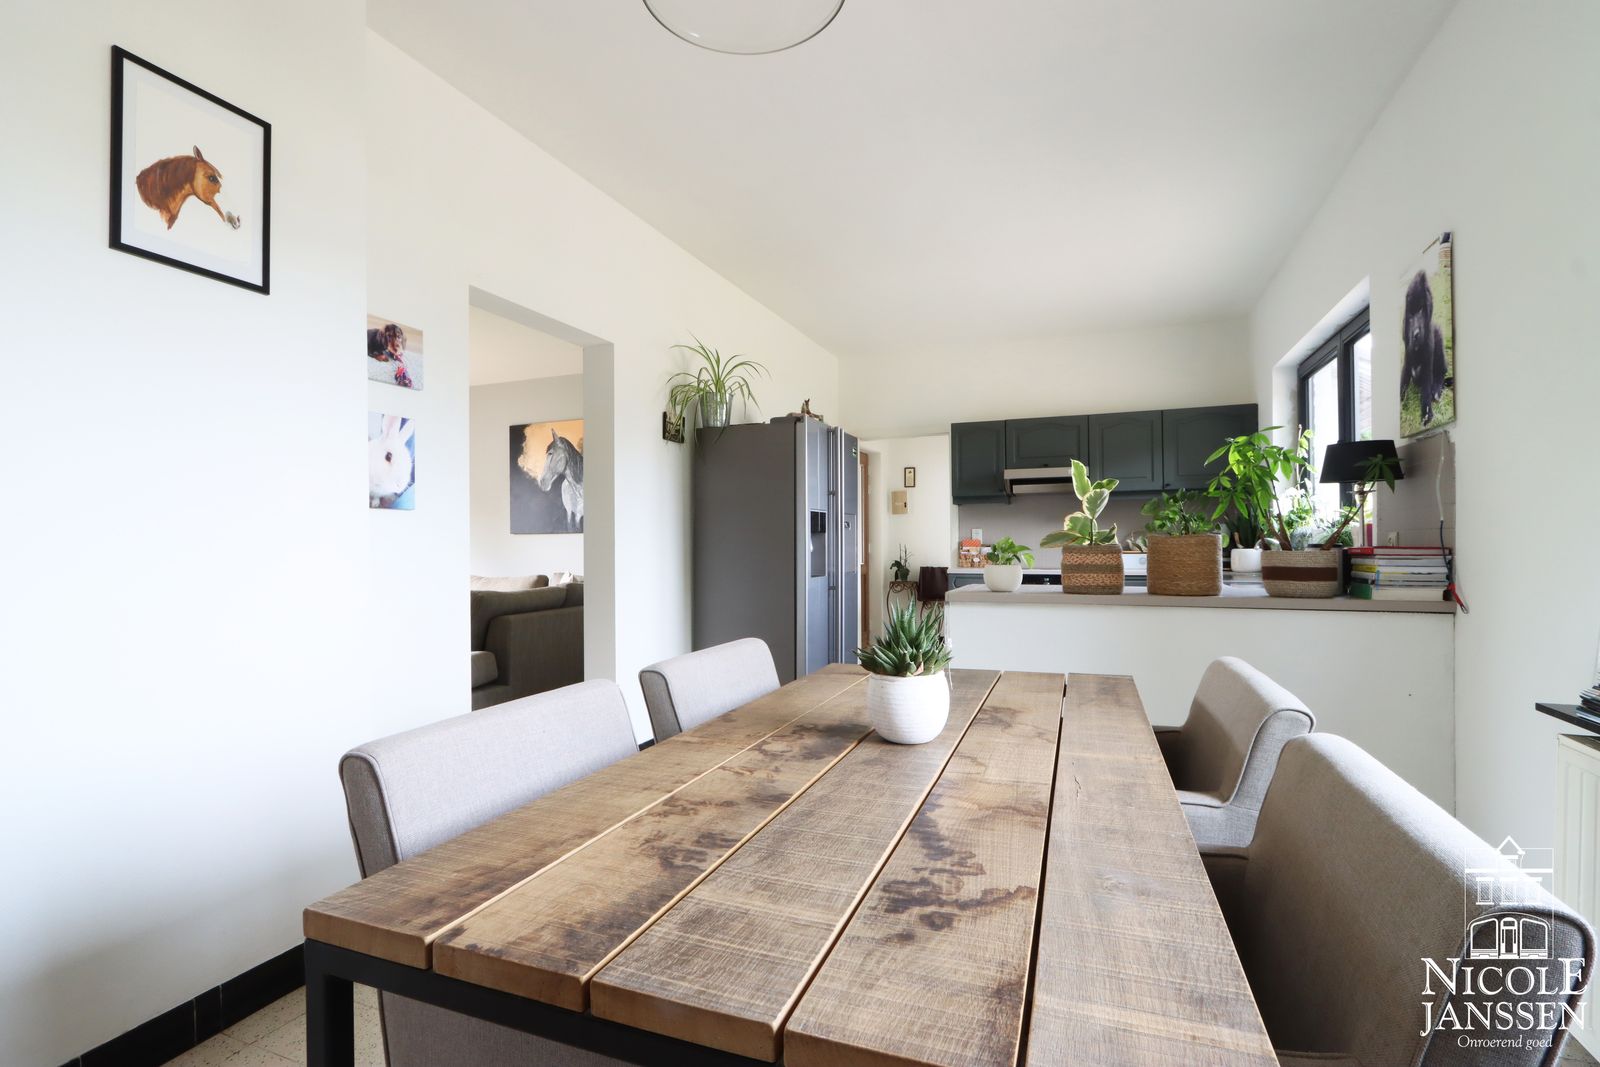 Nicole Janssen - huis te koop - Diestersteenweg 26 te Neeroeteren - keuken4.jpg